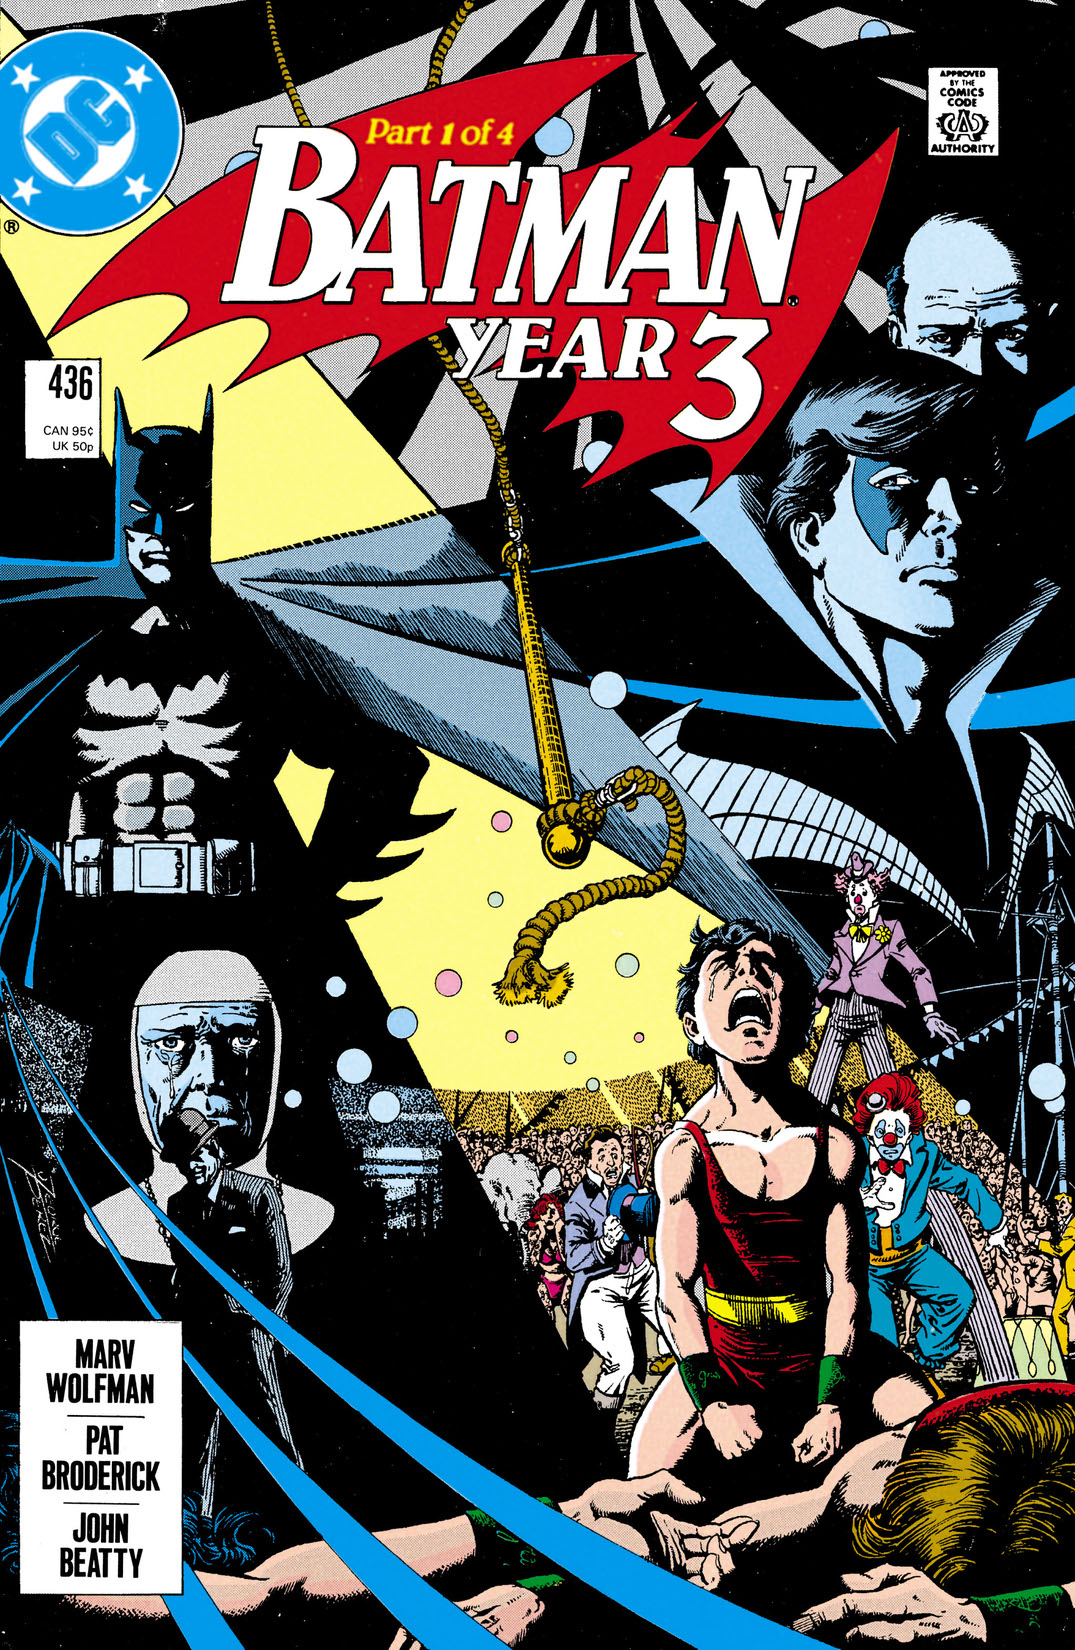 Batman (1940-) #436 preview images